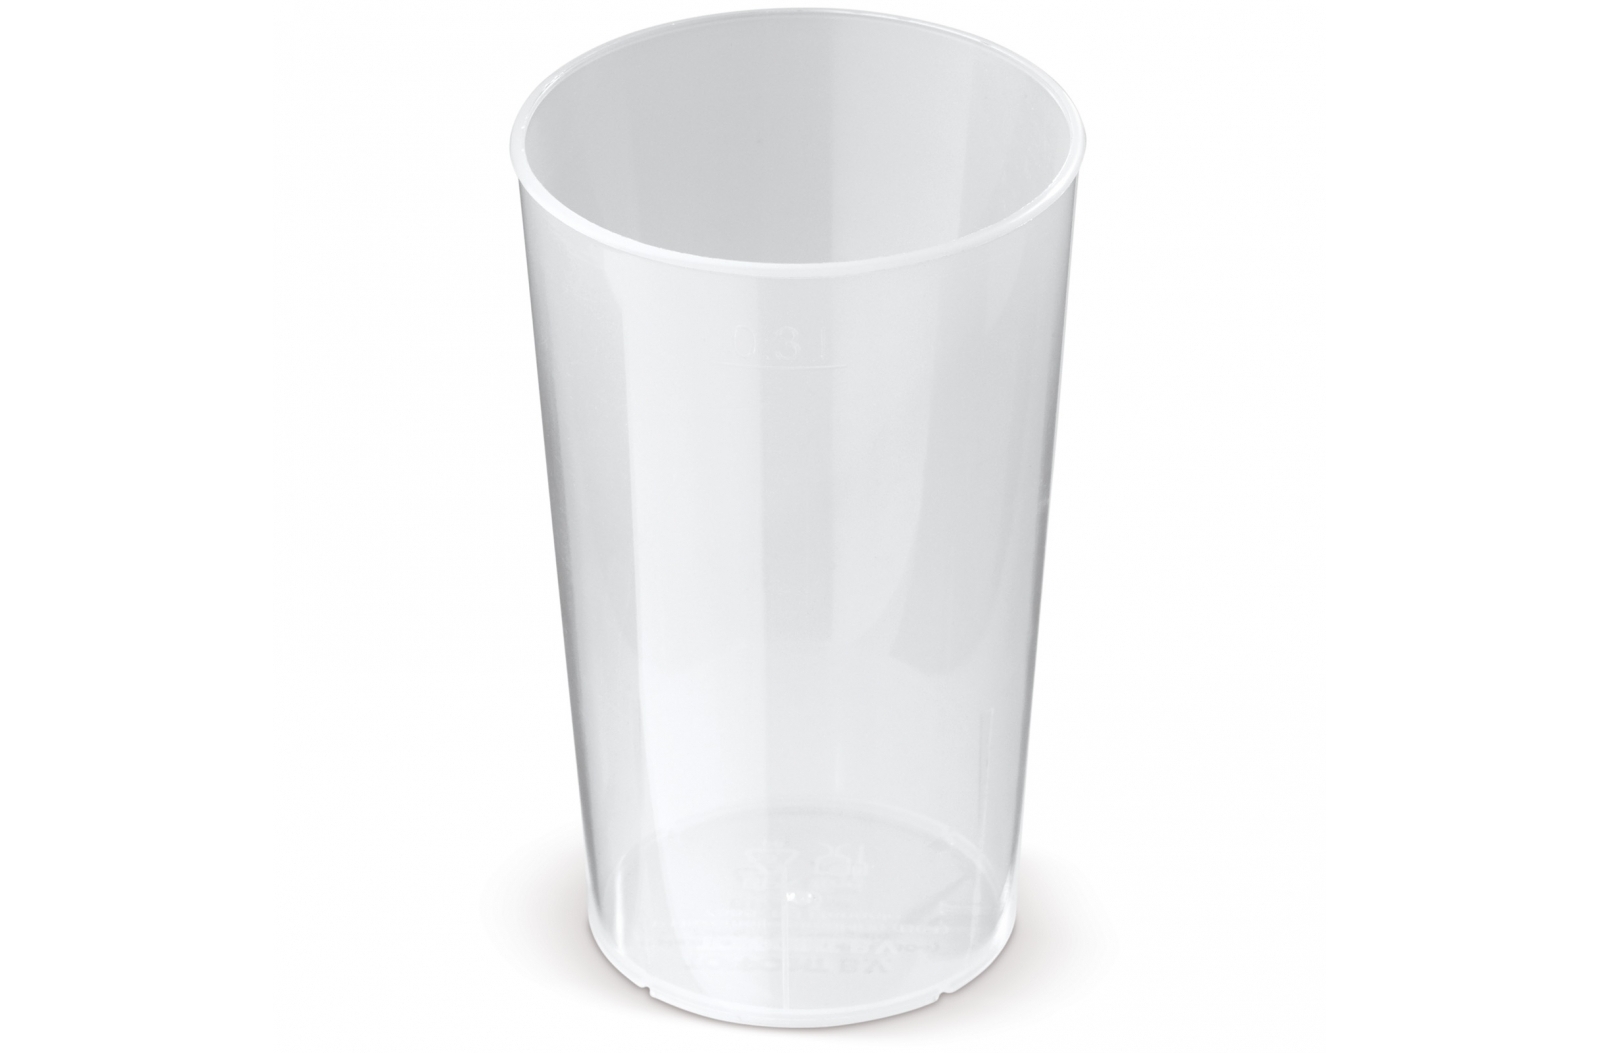 Vasos de Plástico Reutilizables, Irrompibles y Apilables - Marmolejo